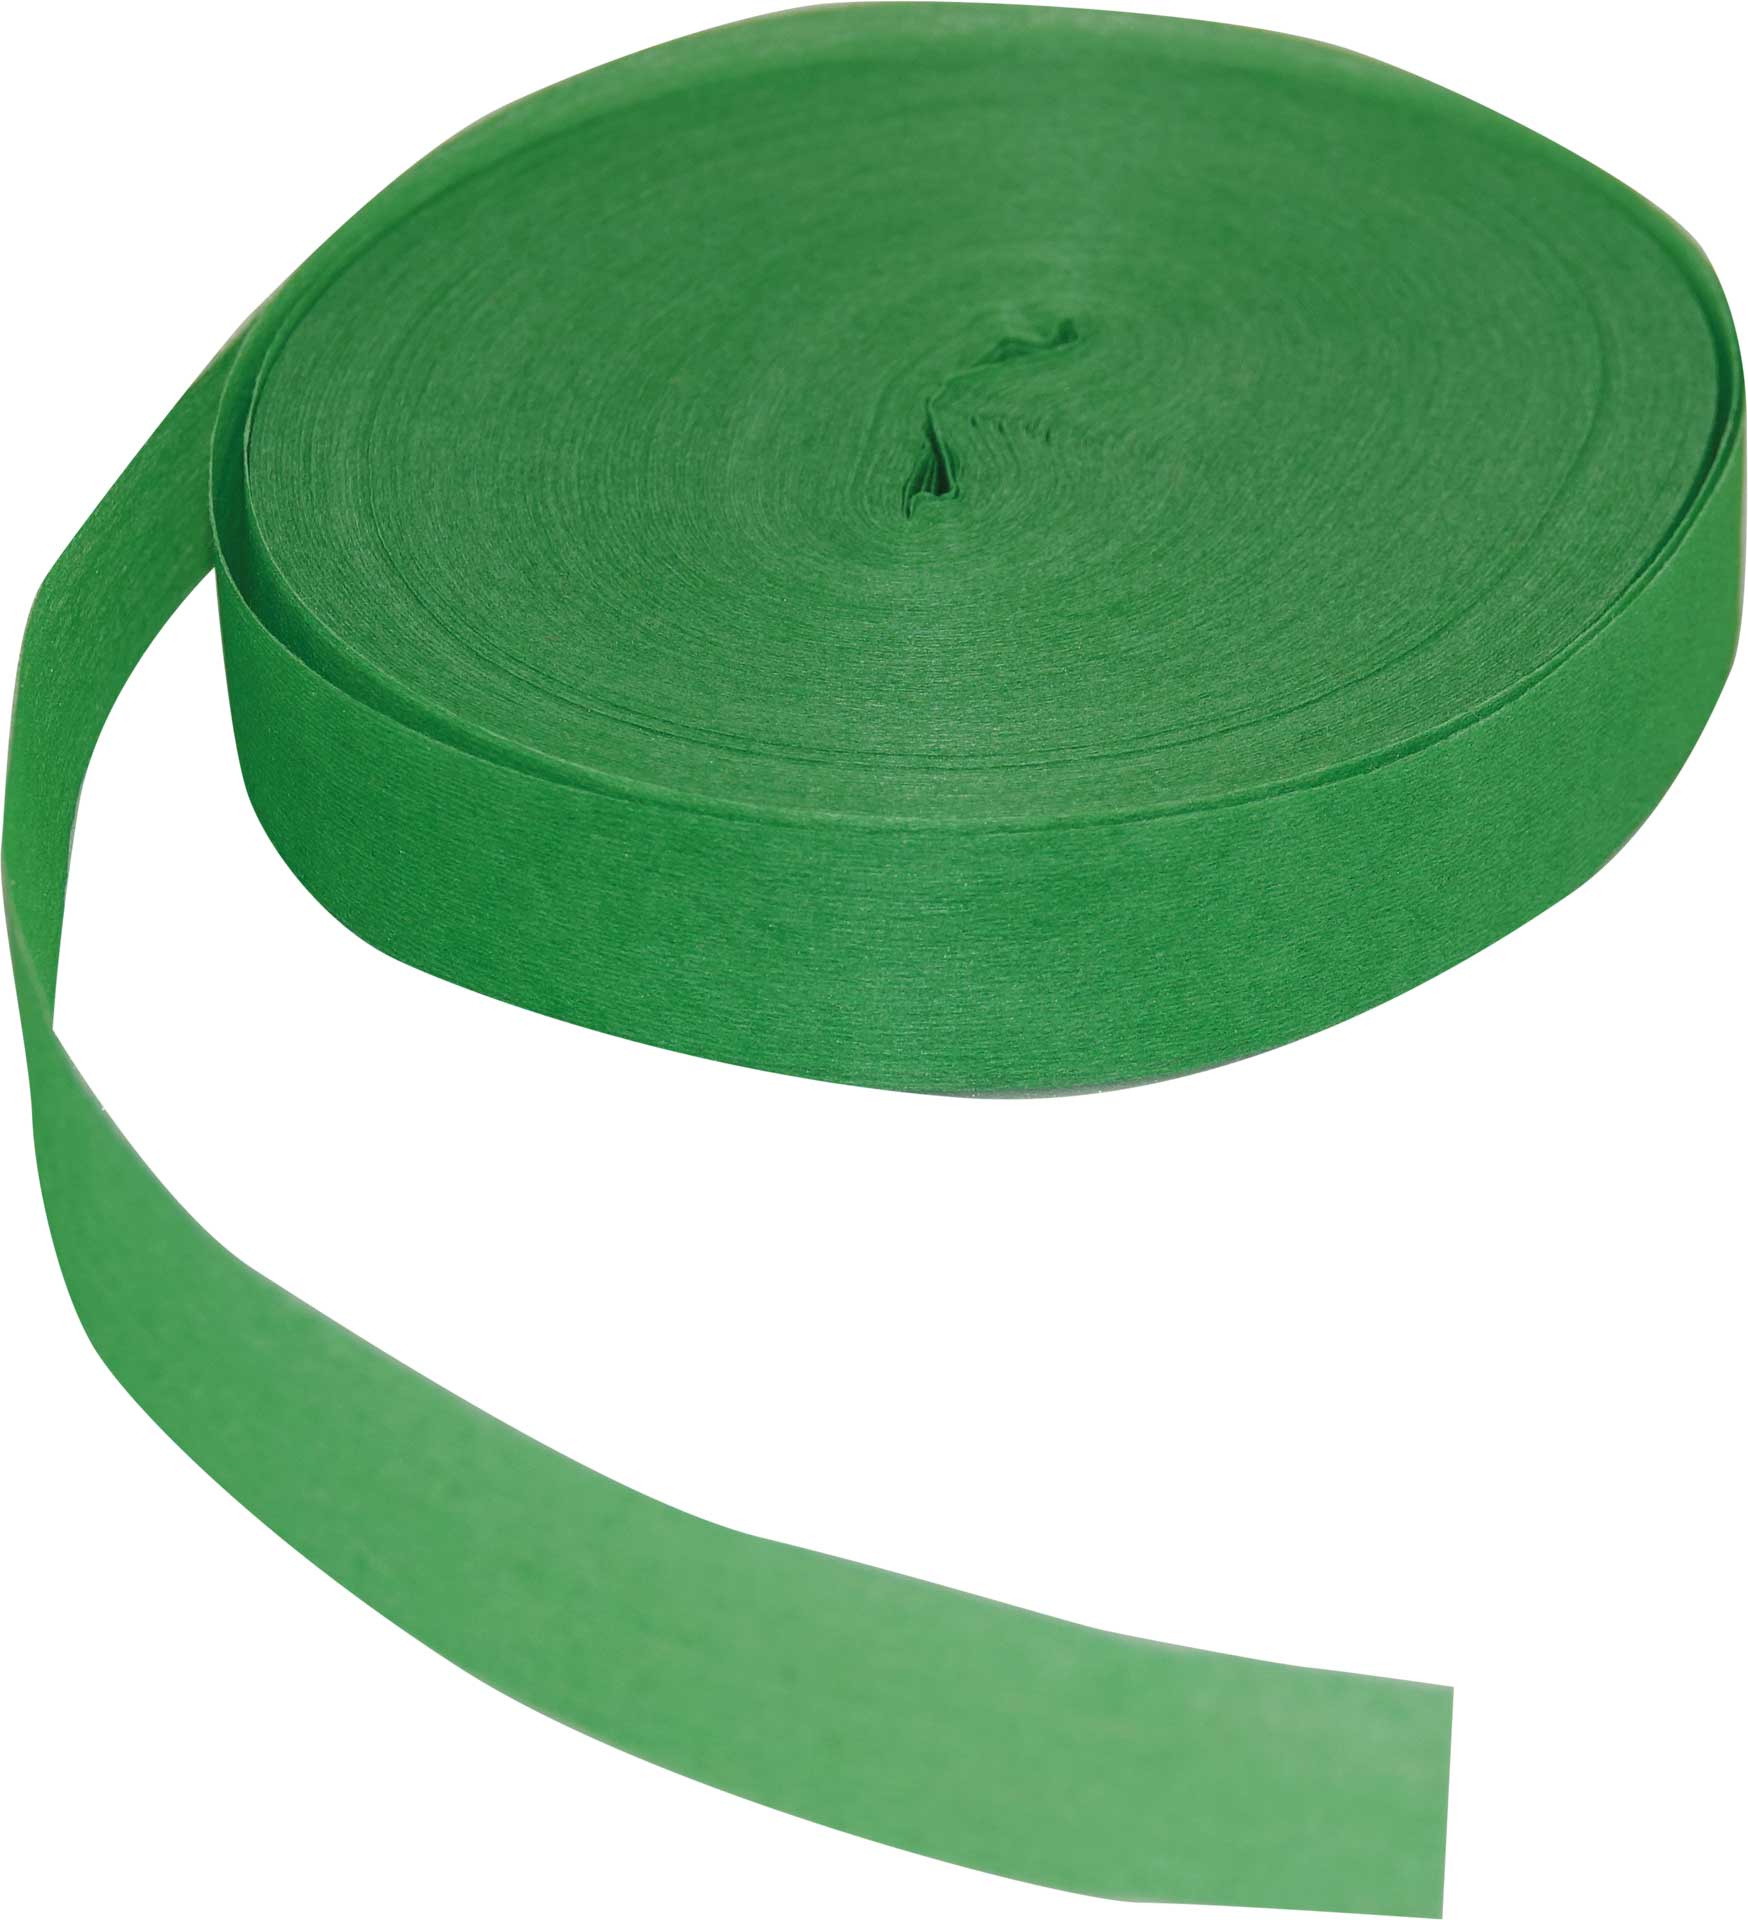 Robbe Modellsport Rubans pour Wingo 2 dans les couleurs vert env. 75m